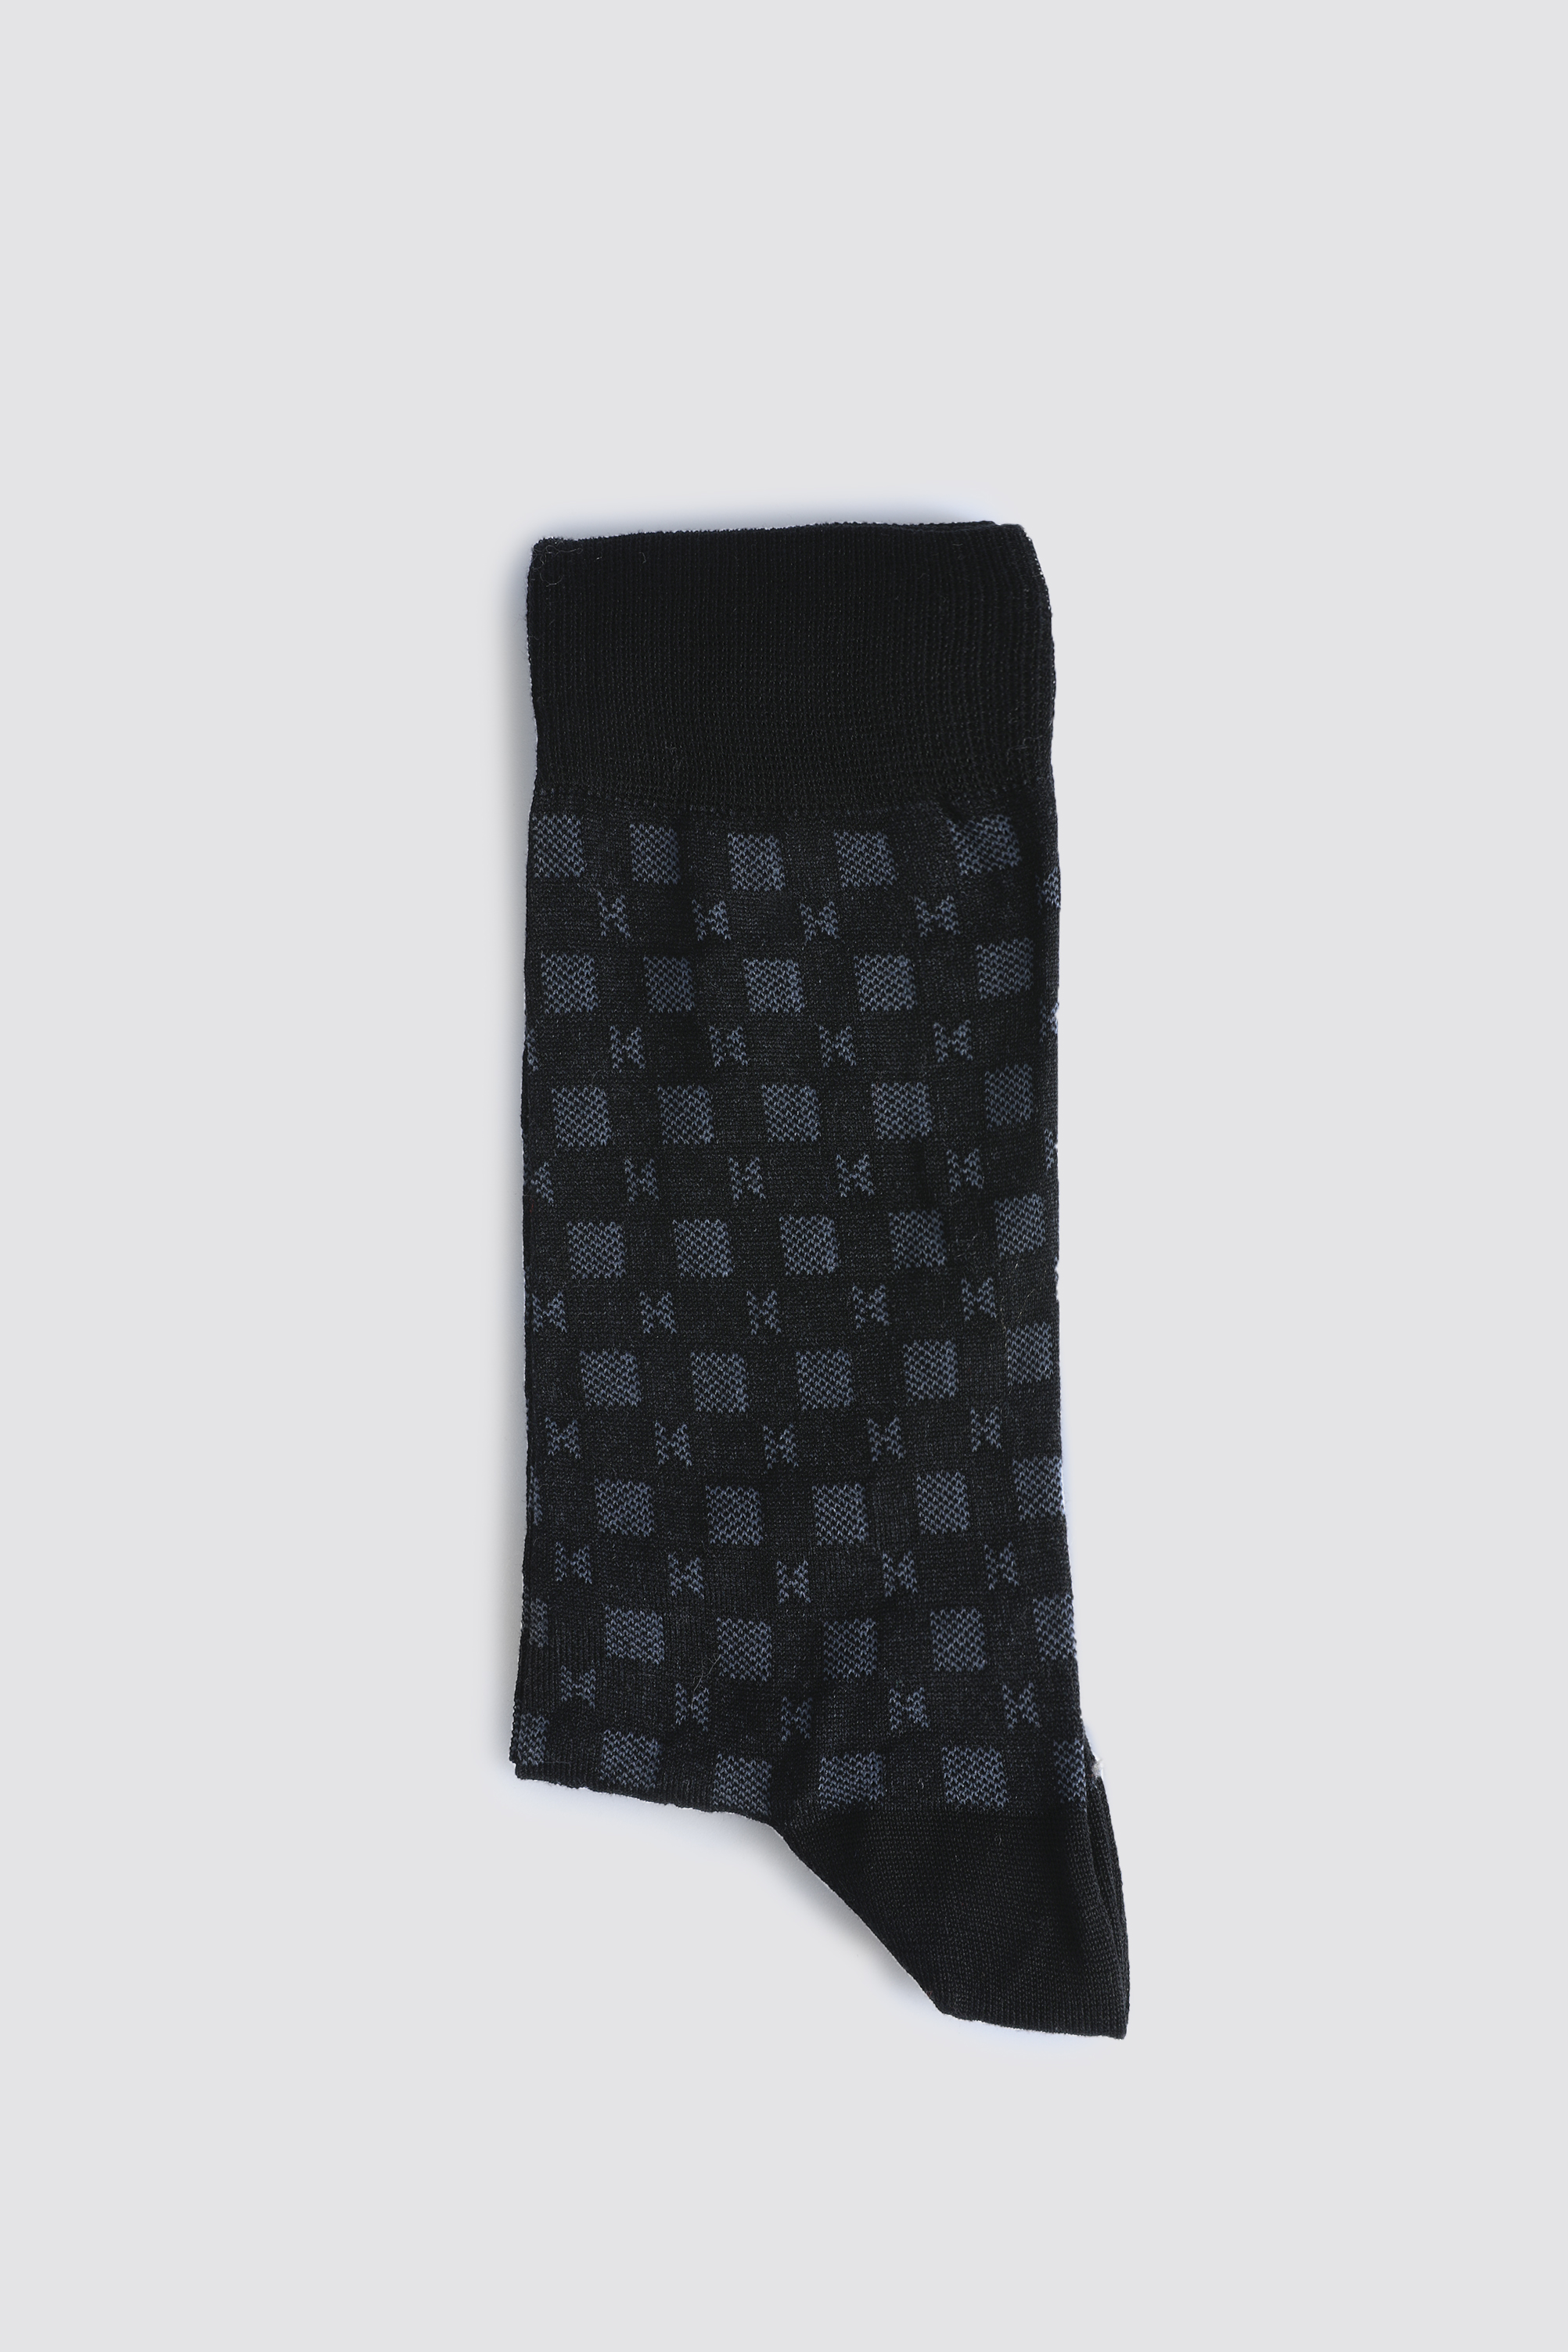 Damat Tween Damat Siyah Çorap. 3